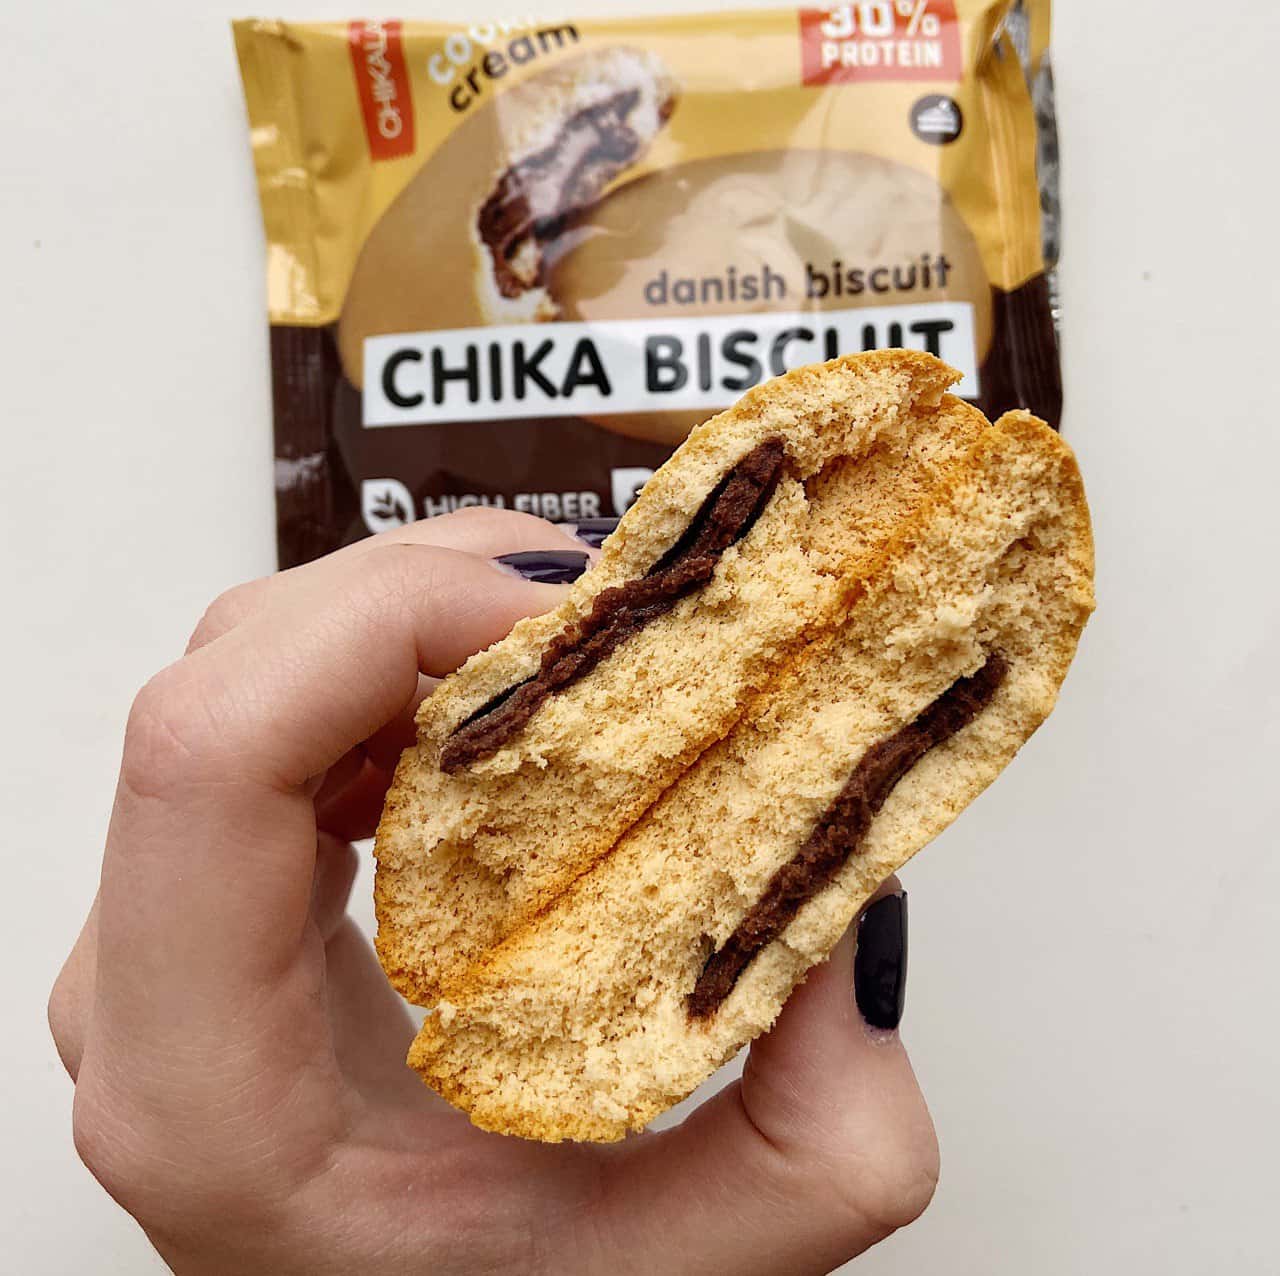 CHIKALAB Печенье не глазированное с начинкой, Chika Biscuit 50 гр